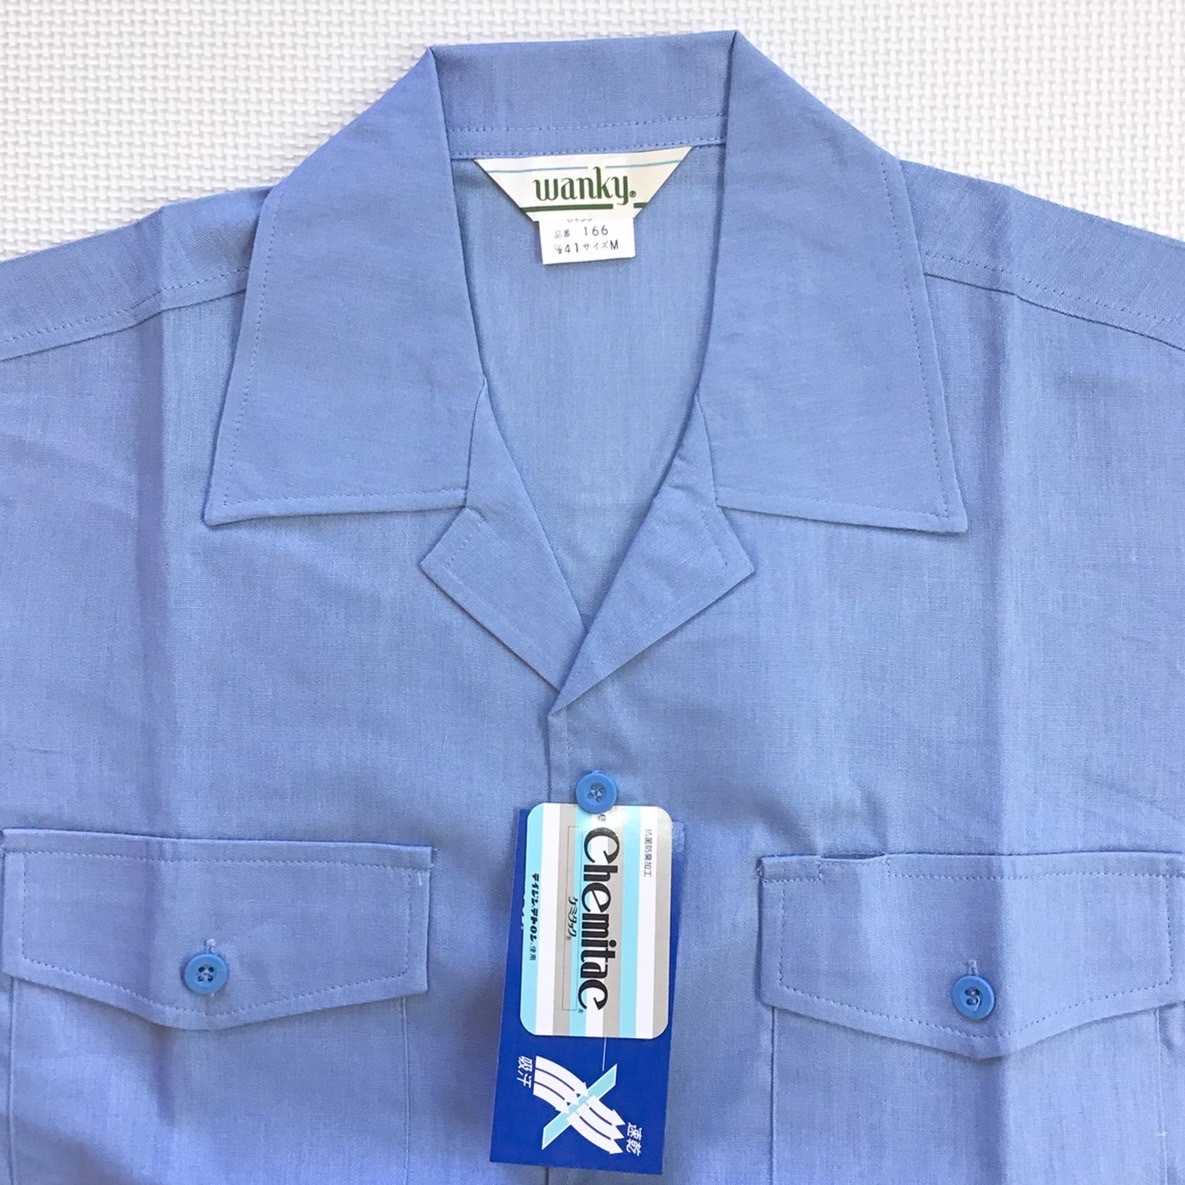 ( наличие   избавление  )  новый товар  неиспользованный товар   wanky [166]  короткие рукава  рубашка    размер   M / синий  / вода  цвет / весна   лето / тонкий /...  бактерия ... запах  /... пот  /.../ работа  .../ Work .../ униформа  